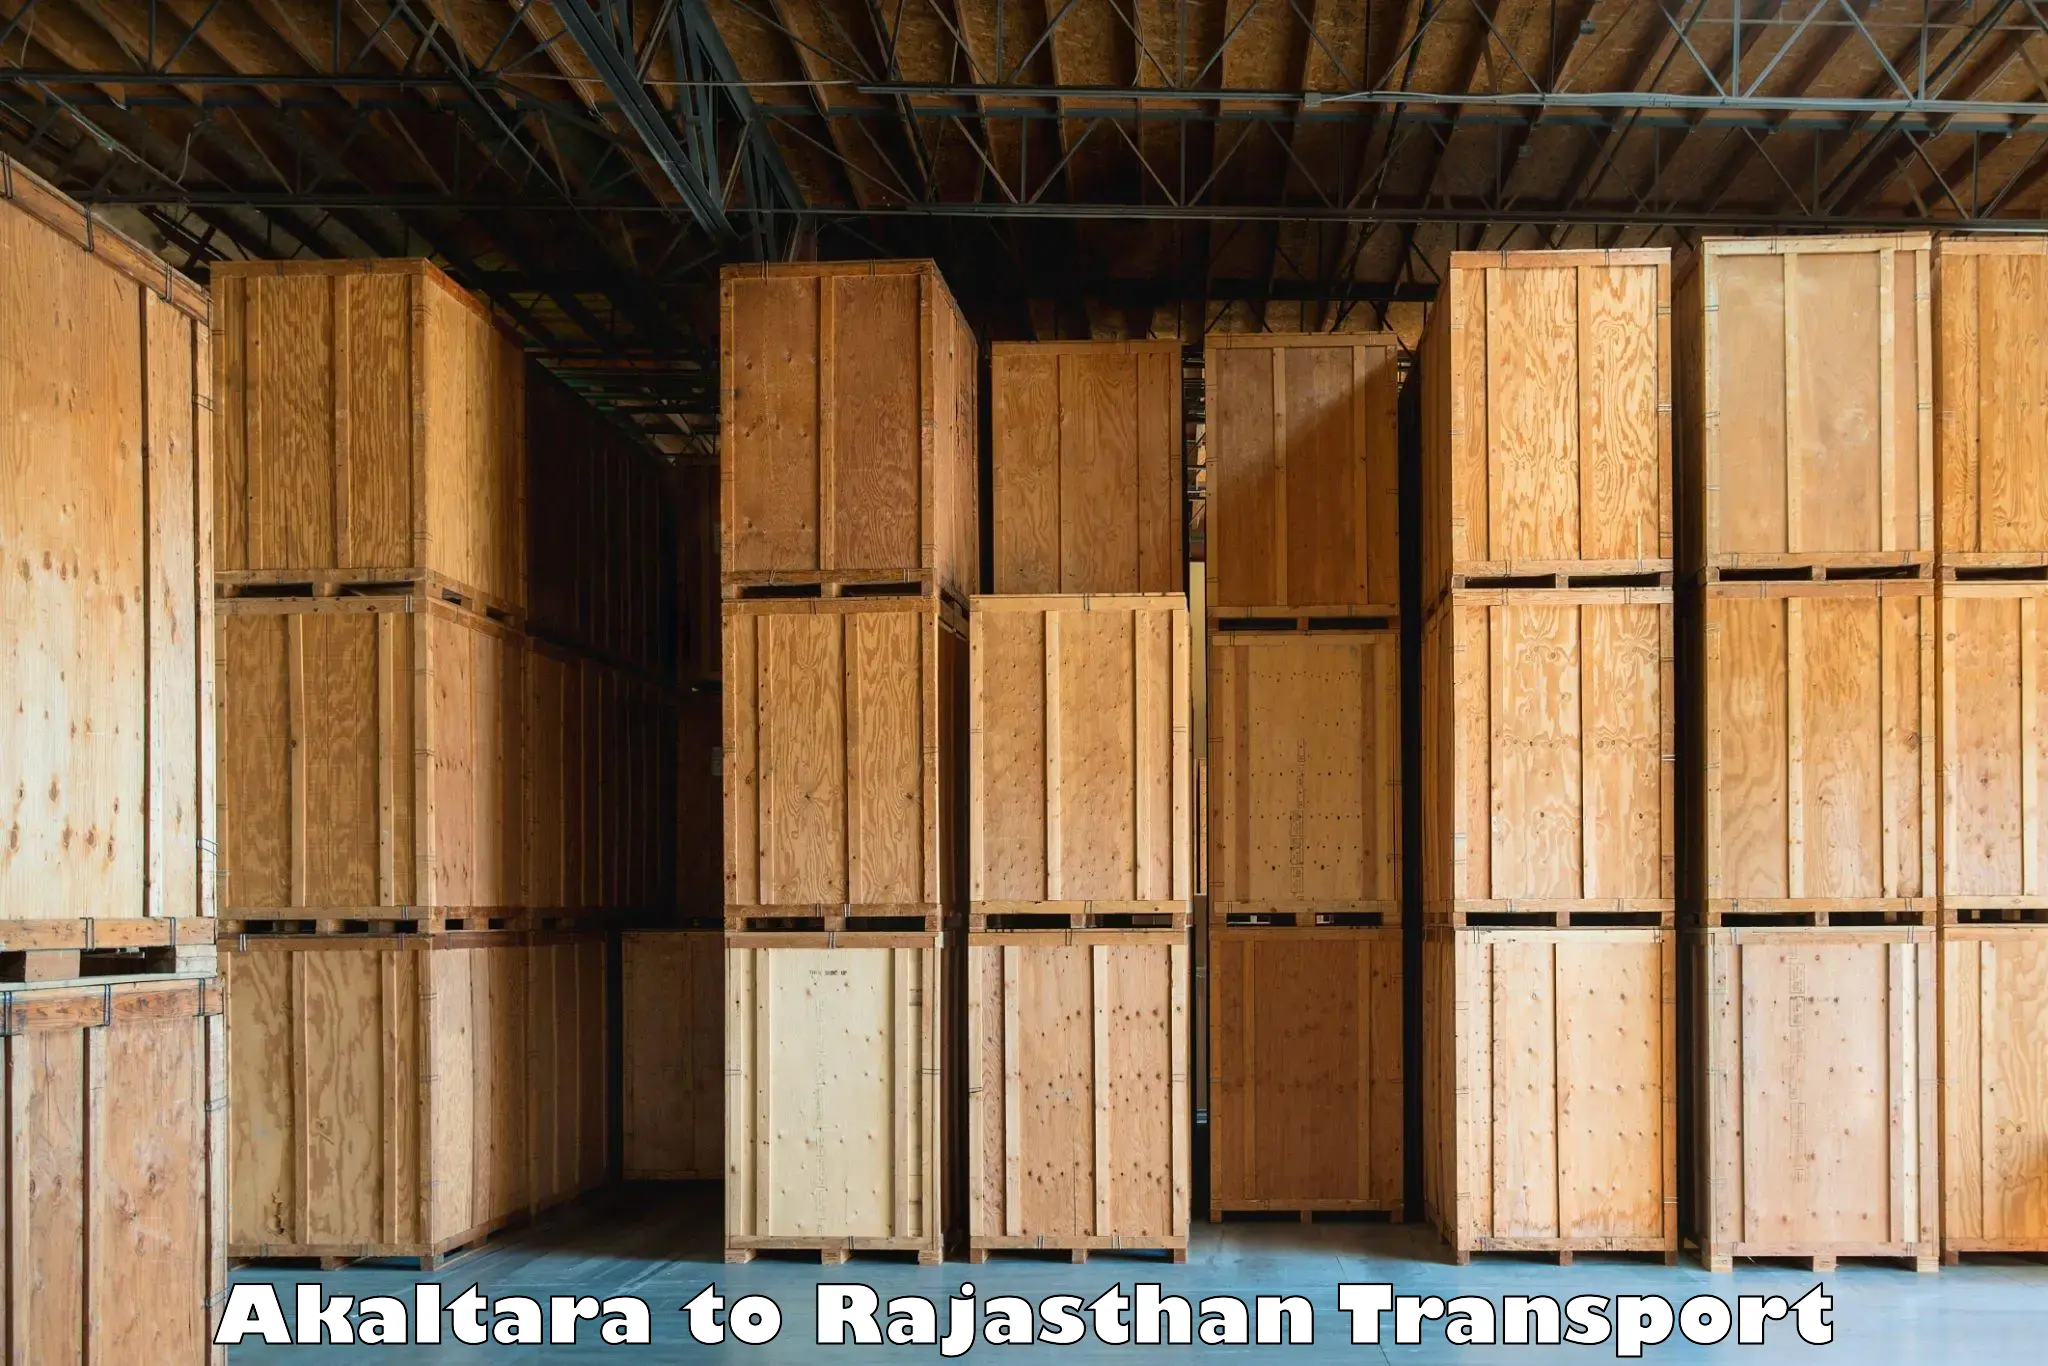 Transportation services Akaltara to Mandalgarh